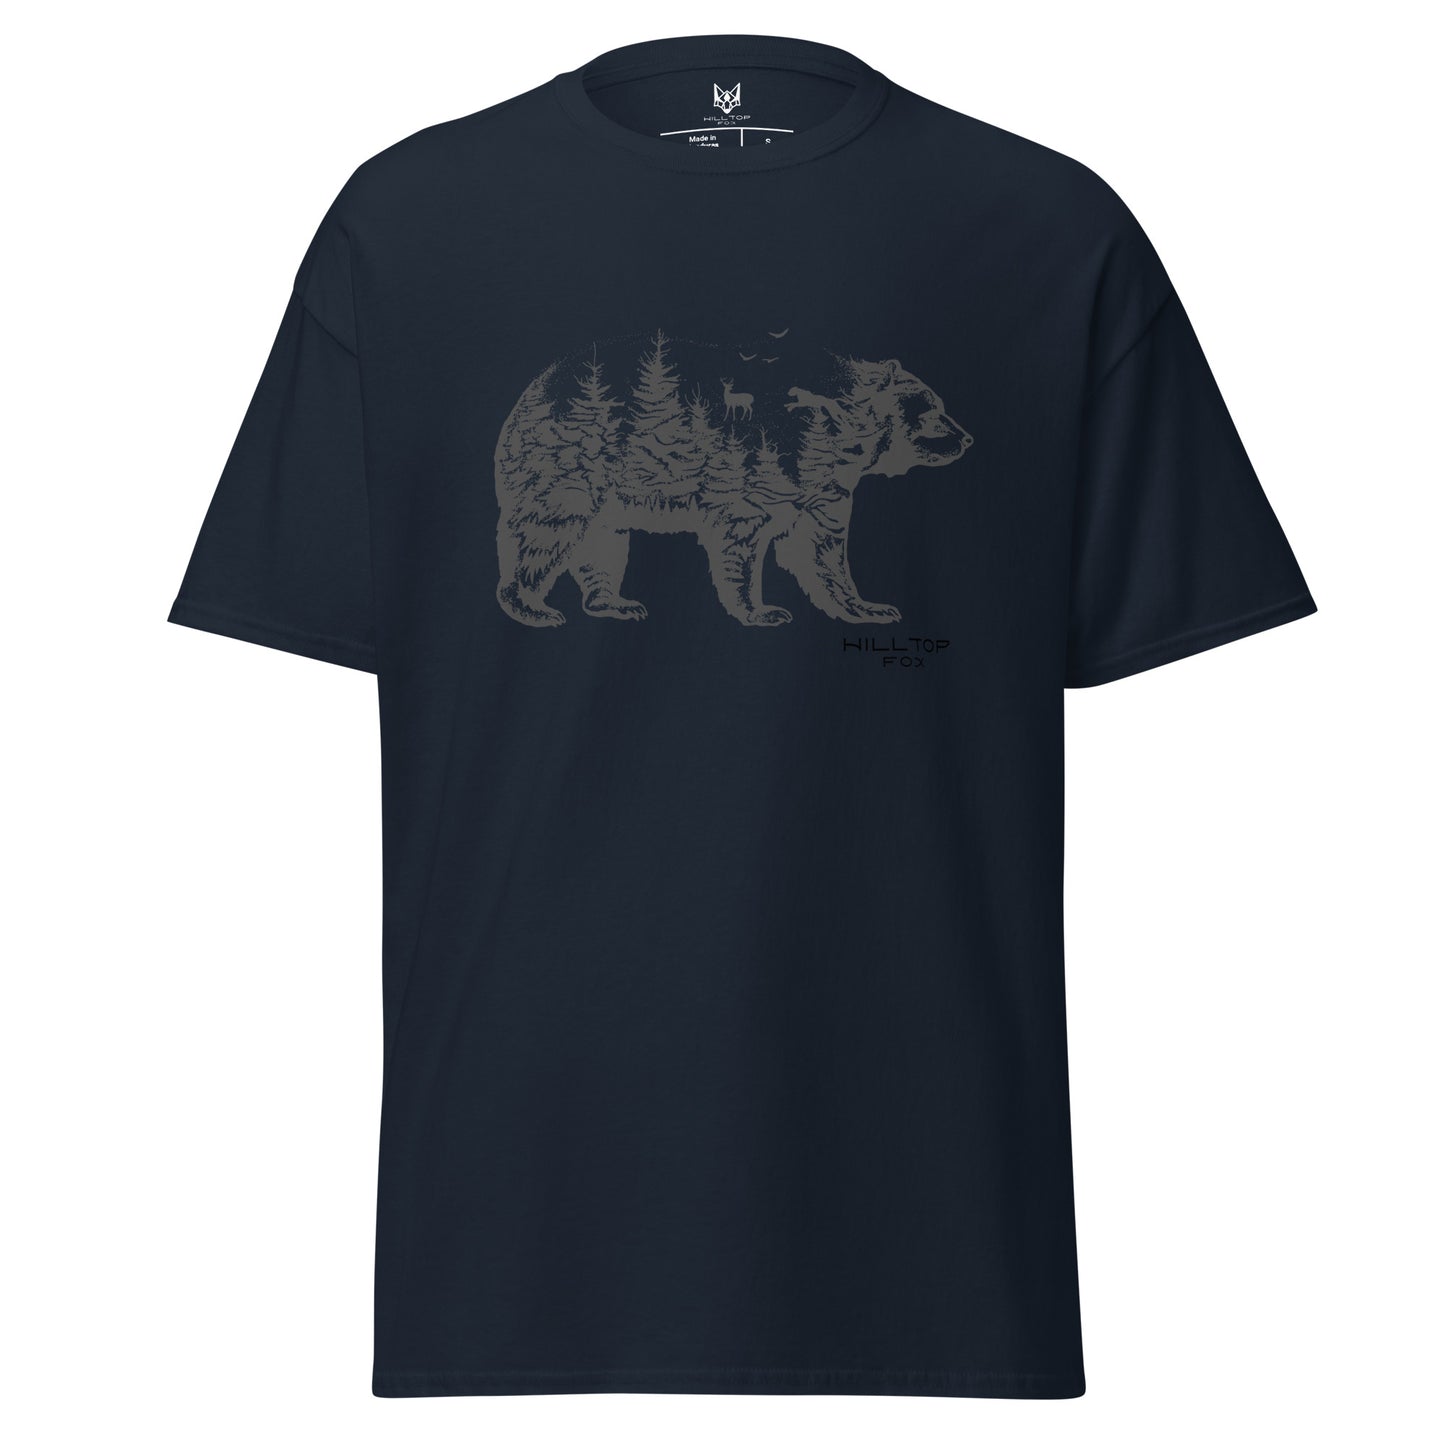 Camiseta Hilltop con oso zorro